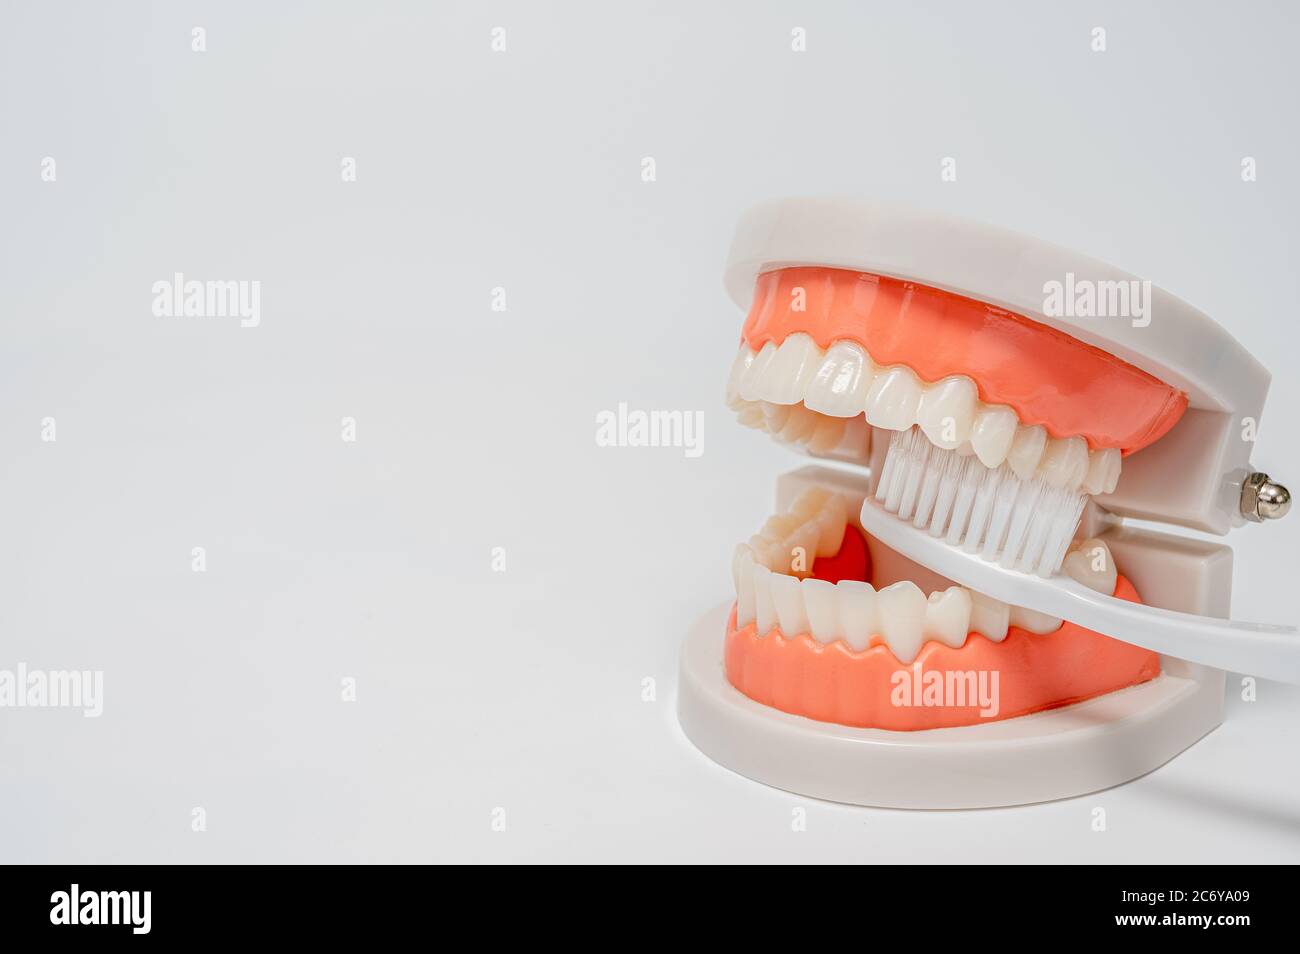 Dentisterie, médecine, équipement médical et stomatologie concept. Modèle à mâchoire avec brosse à dents blanche sur fond blanc. Banque D'Images